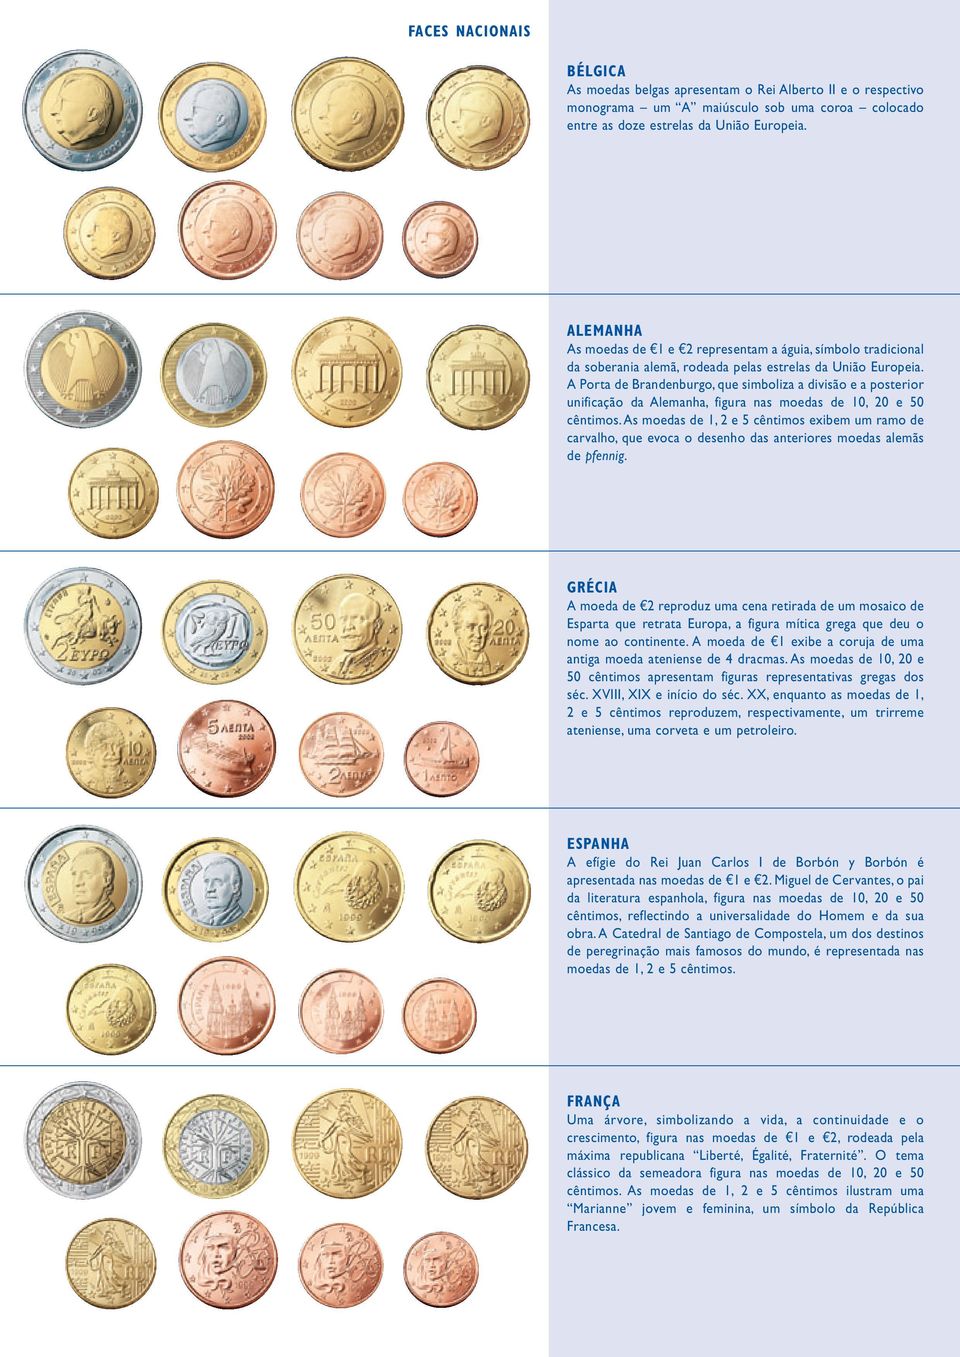 A Porta de Brandenburgo, que simboliza a divisão e a posterior unificação da Alemanha, figura nas moedas de 10, 20 e 50 cêntimos.